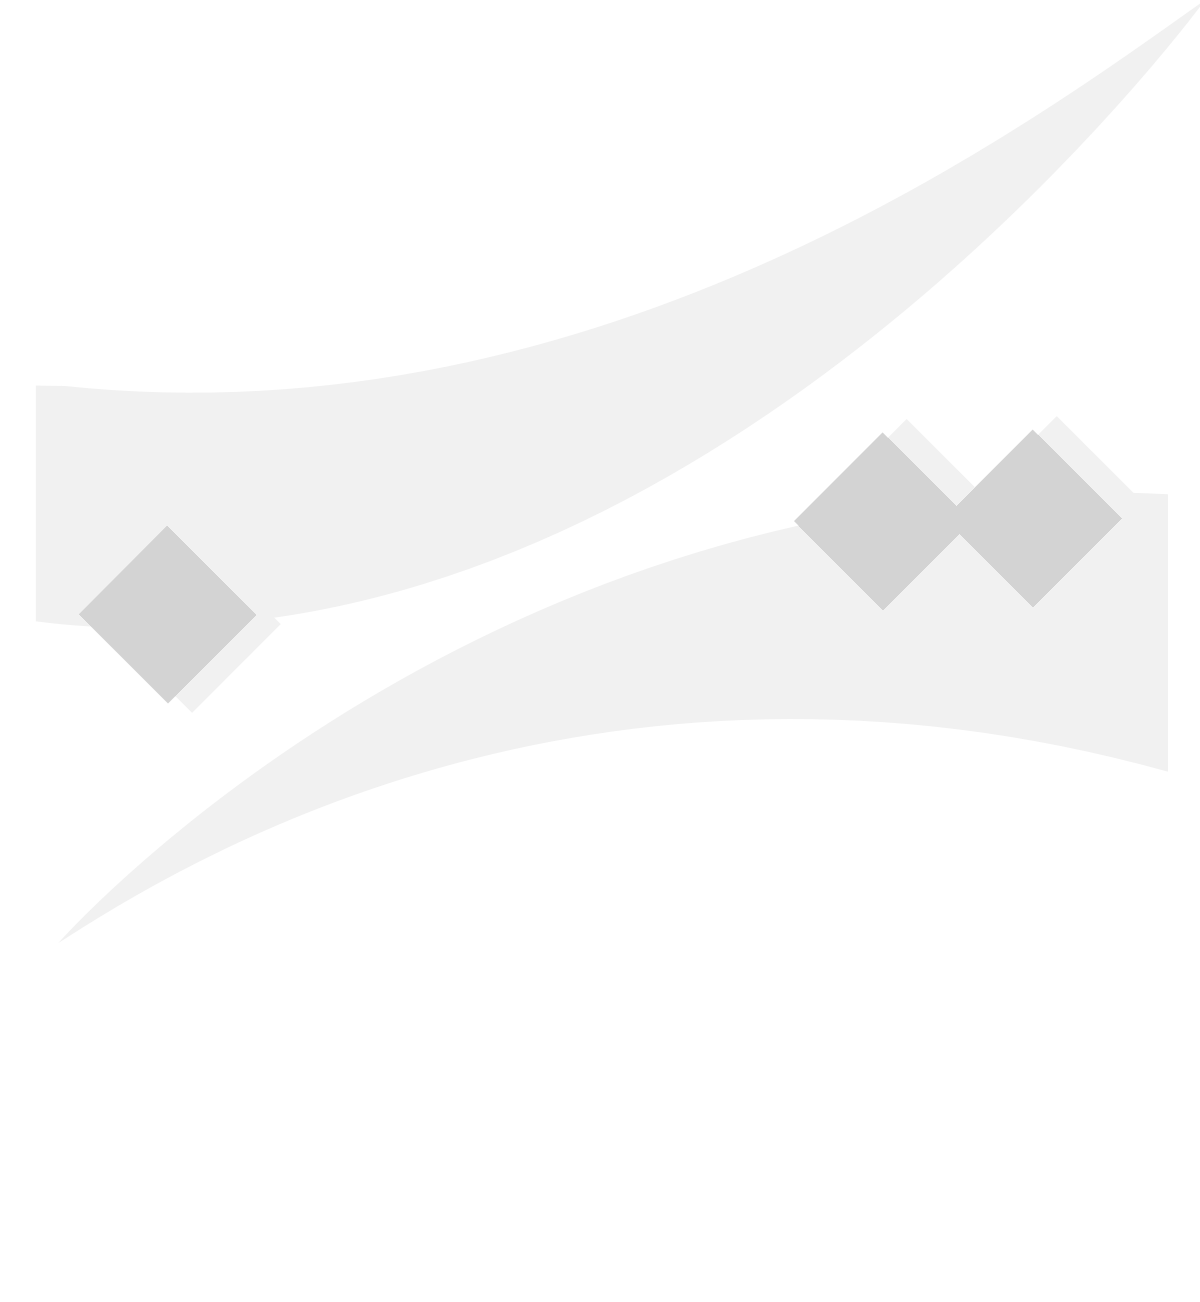 Poste Tunisienne